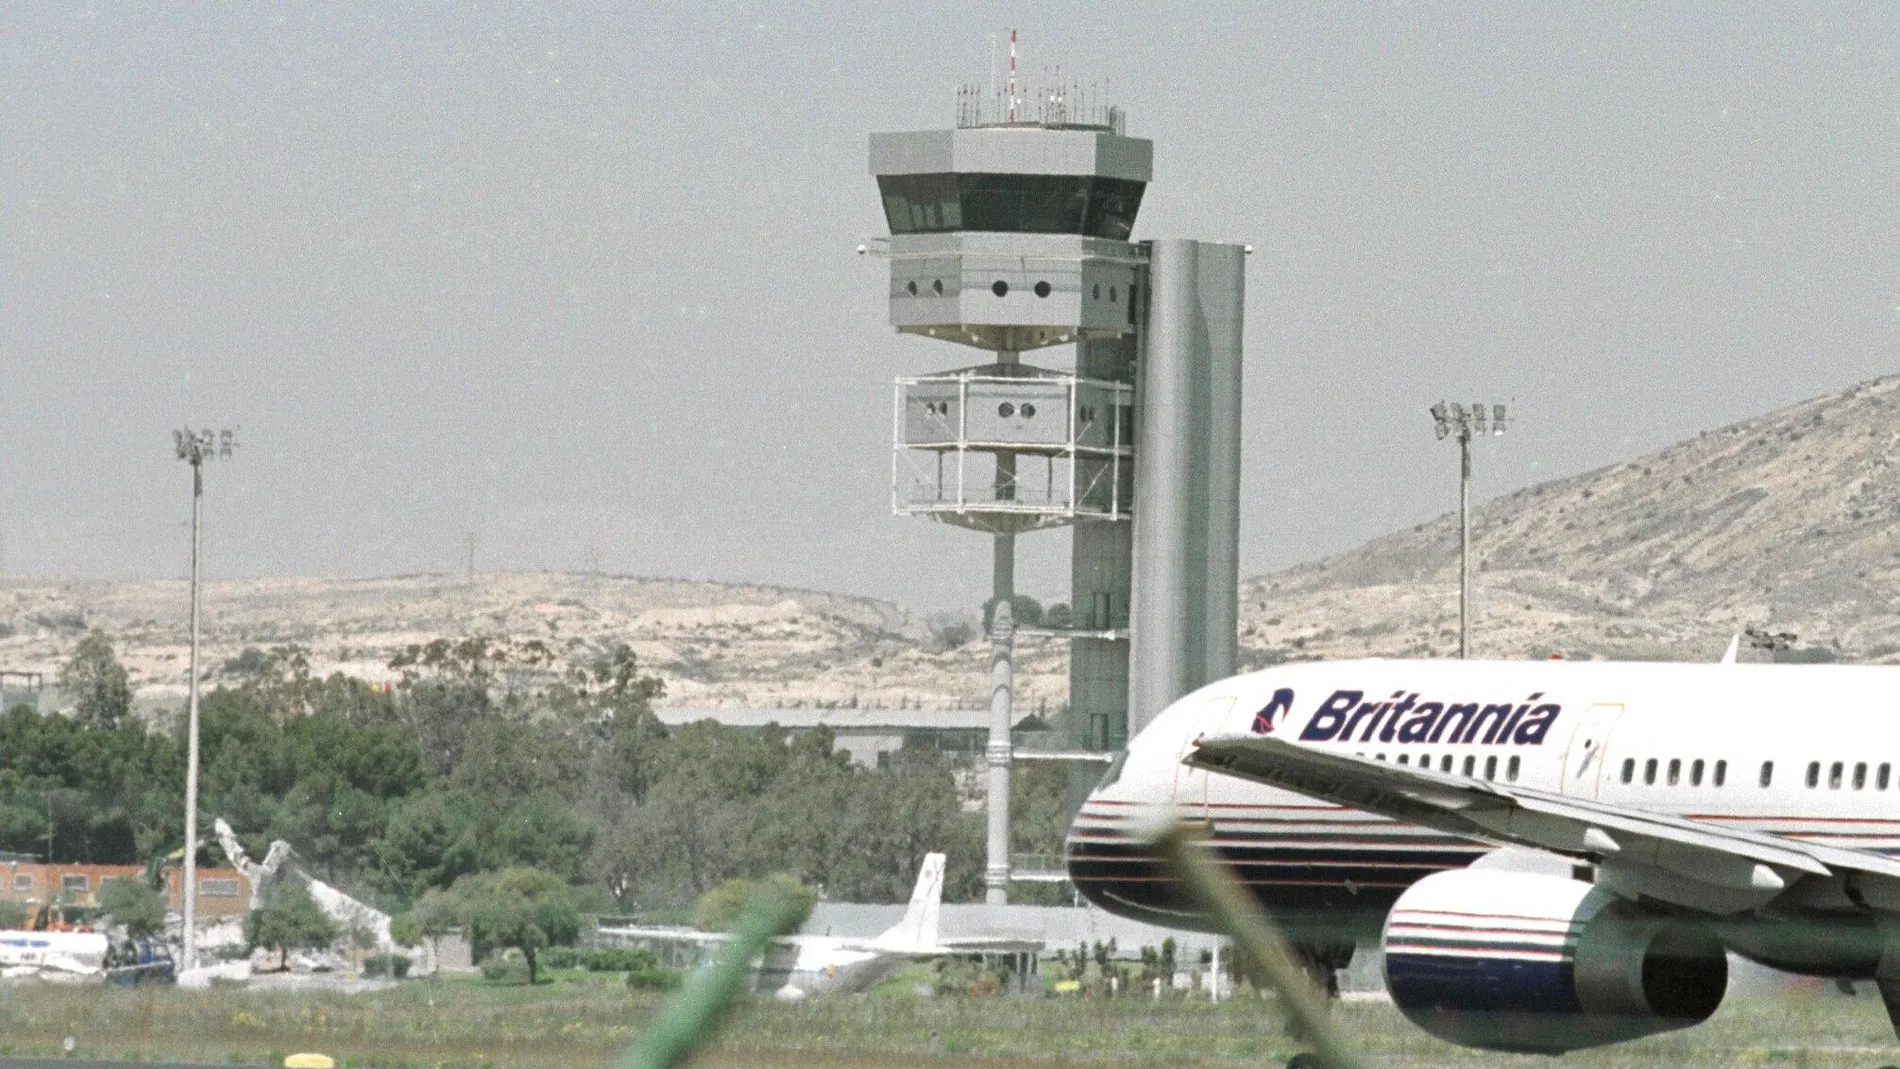 Torre de control del aeropuerto de Alicante